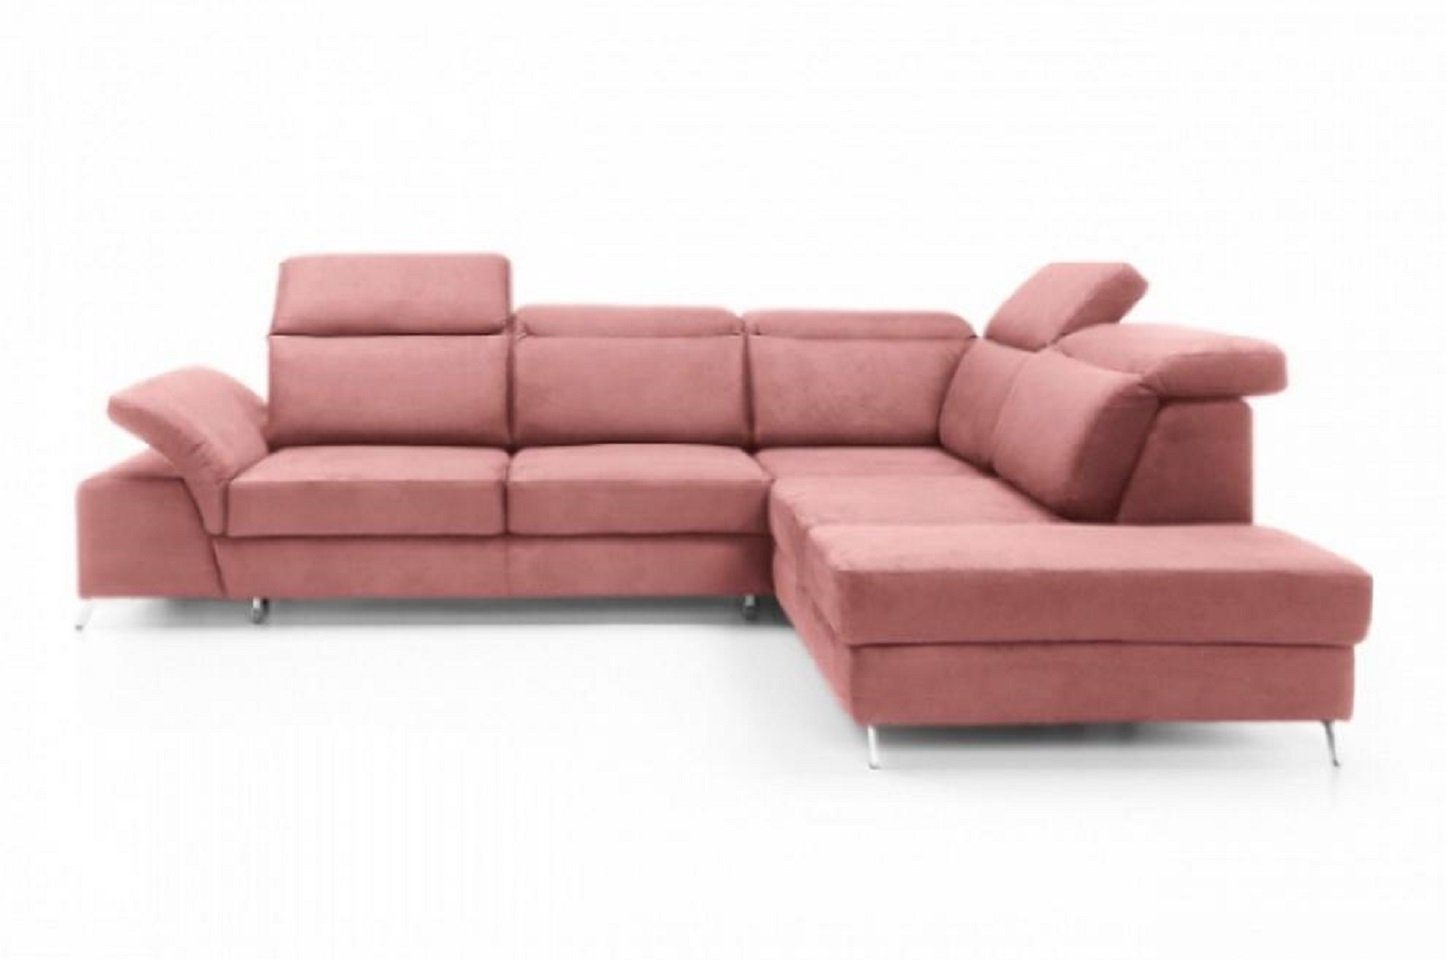 2 in Europe Sofa Teile, L Form Made Moderne Luxus, Rosa Eckgarnitur JVmoebel Kunstleder Ecksofa Ecksofa